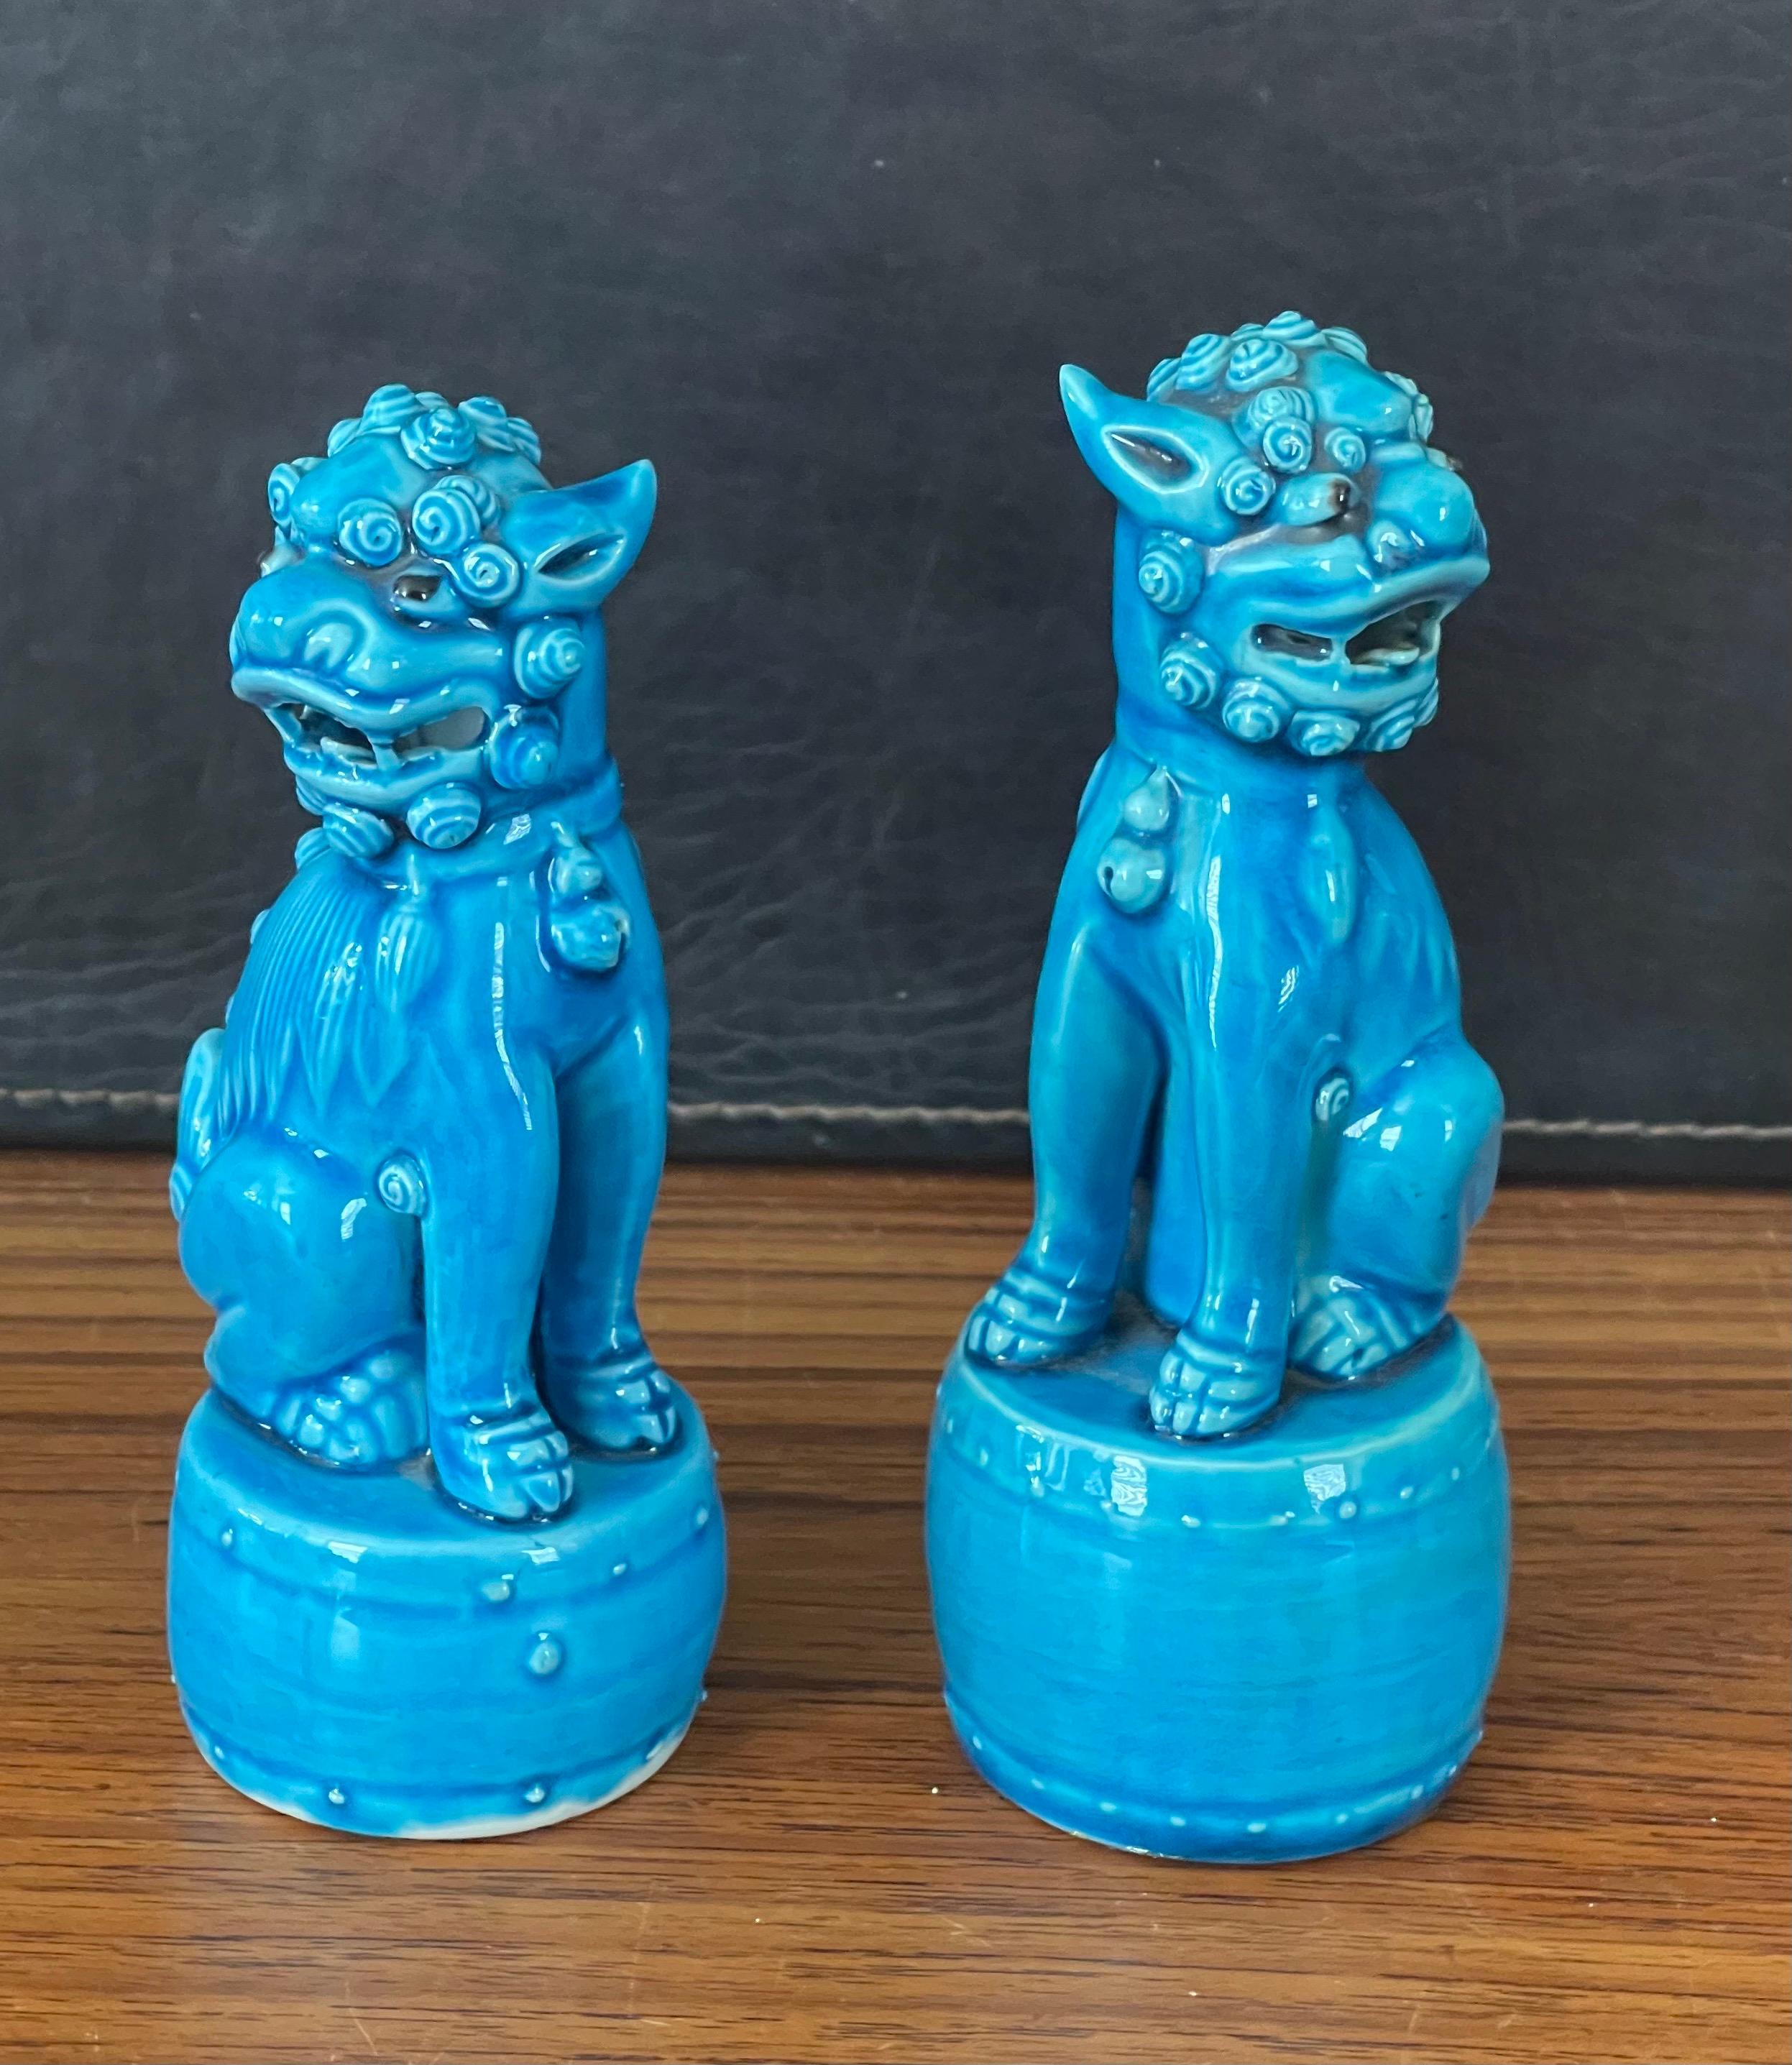 Super cute petite Paar Vintage türkisblau Keramik foo Hund Skulpturen, ca. 1960er Jahre. Diese symbolischen Wächter haben einen schönen türkisen Farbton und tolle Linien und Wirbel in der Keramik. 
Das Paar ist in sehr gutem Zustand ohne Chips,